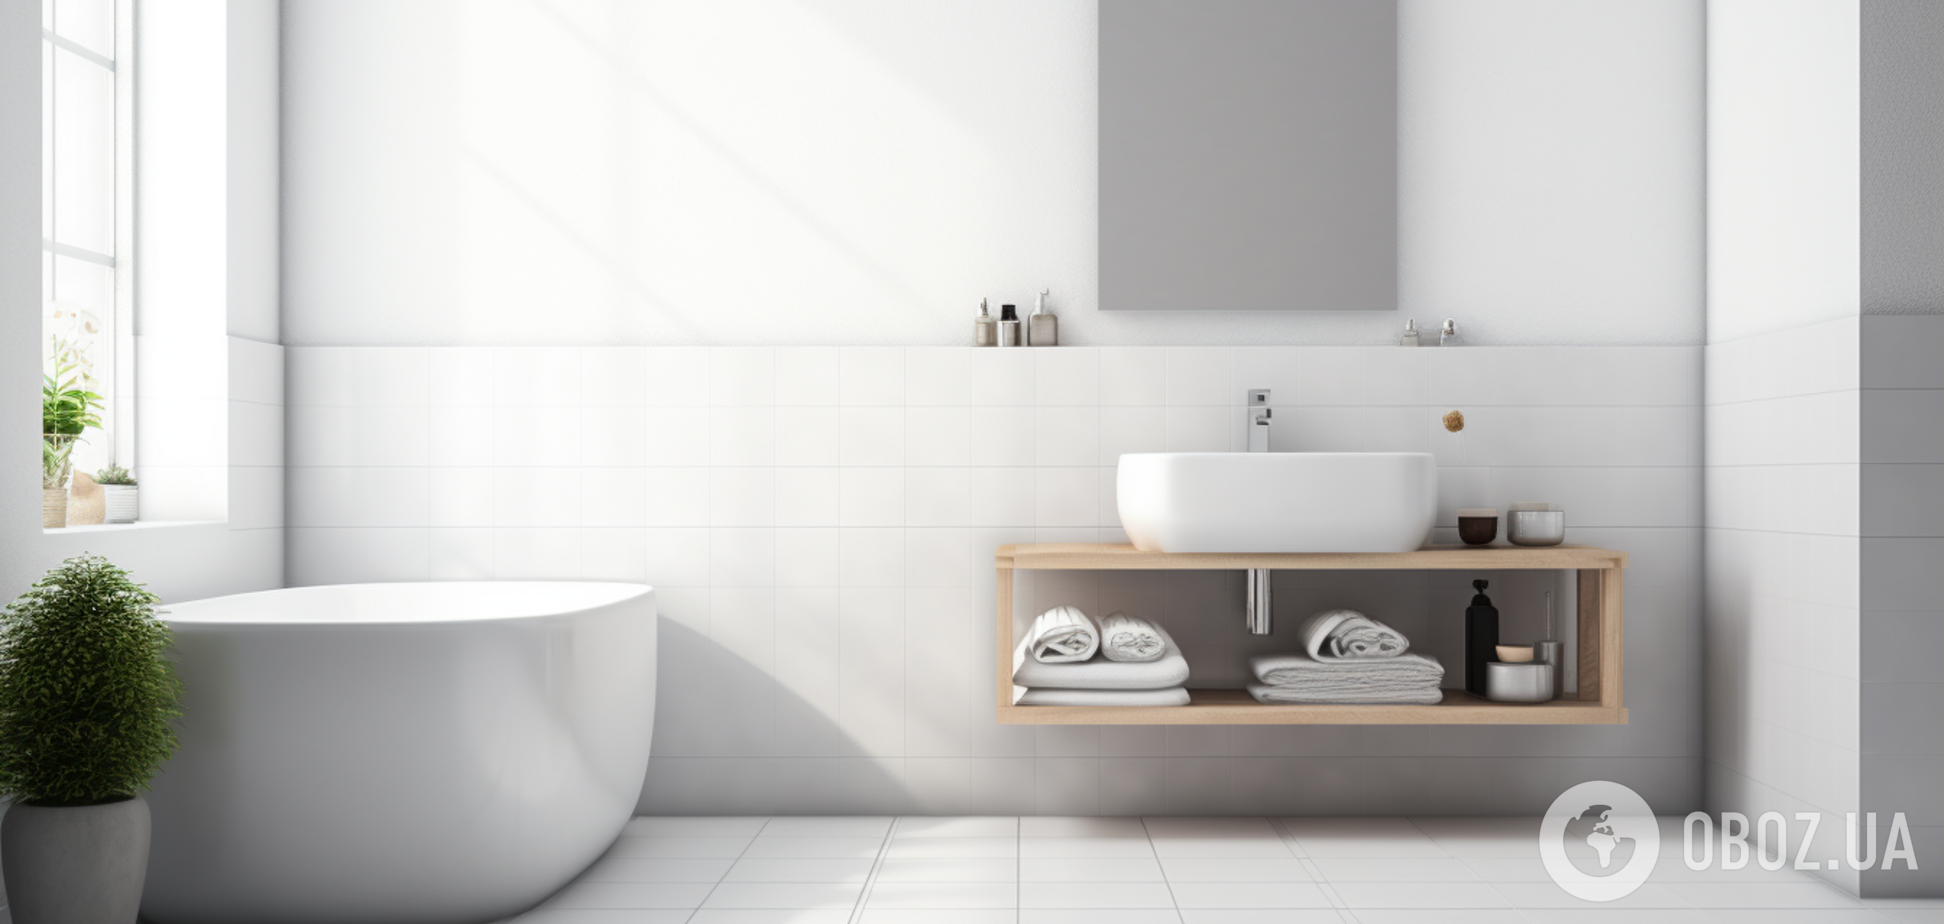 Як досягти максимальної свіжості у ванній: прості хитрощі